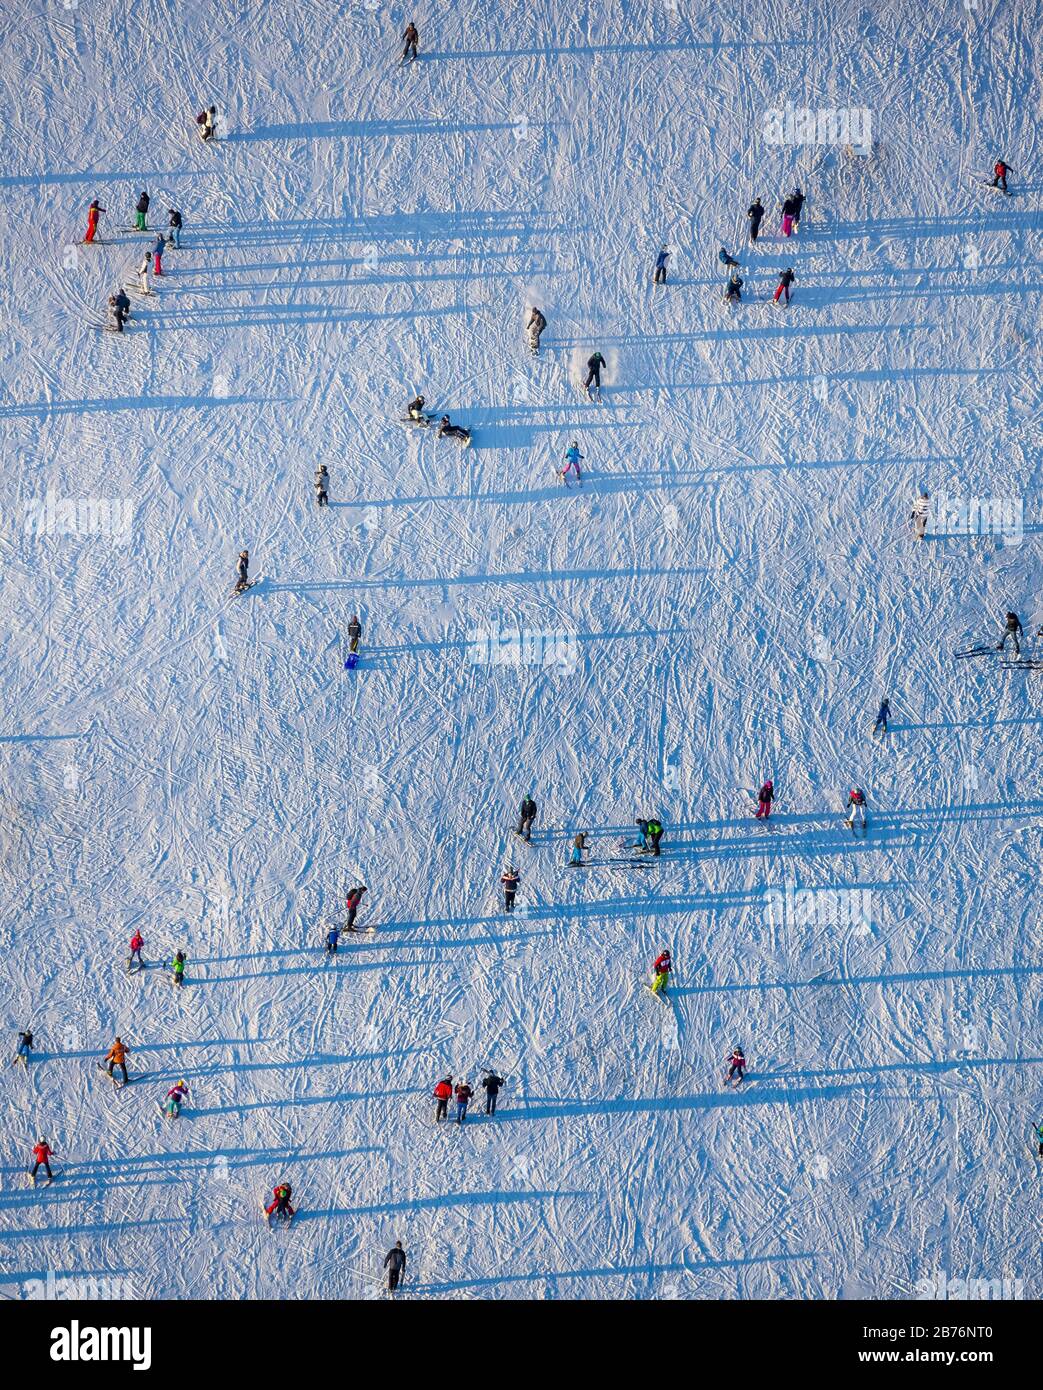 , Snowy-Skipisten und Abfahrtski in den Wintersportgebieten Winterberg, 28.12.2014, Luftbild, Deutschland, Nordrhein-Westfalen, Winterberg Stockfoto